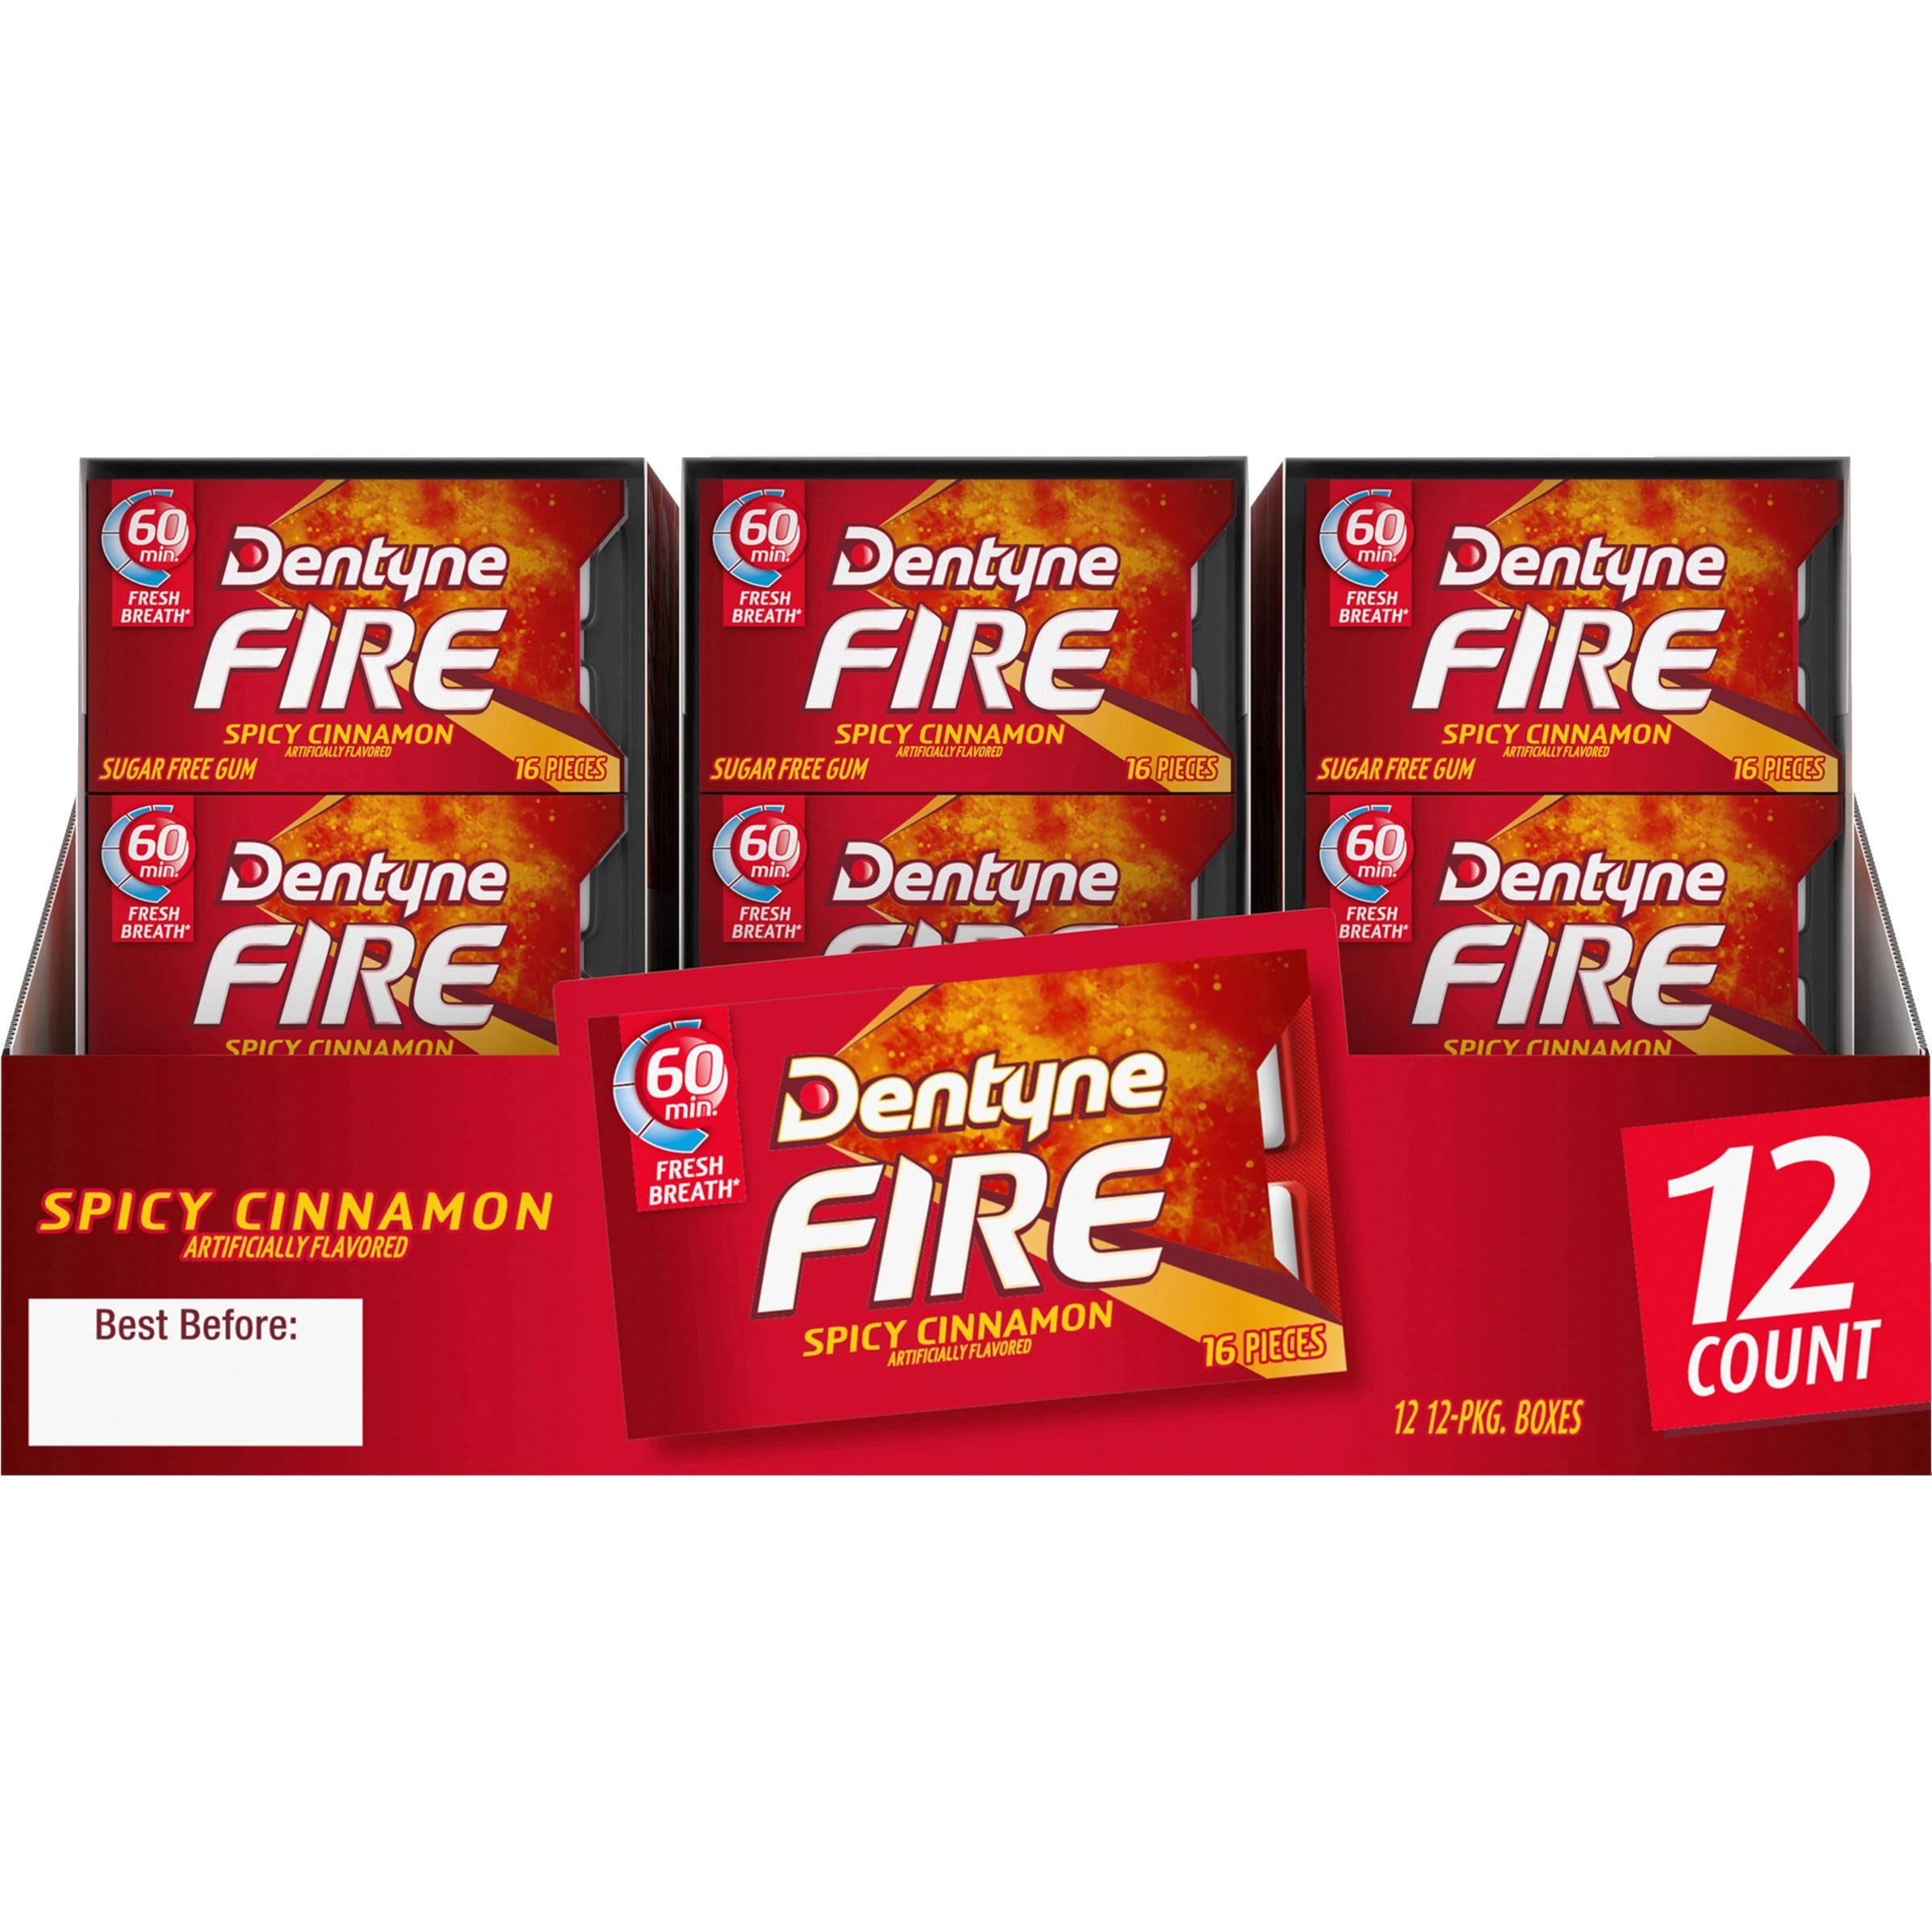 Dentyne Fire Gum - 16 Pack, Spicy Cinnamon